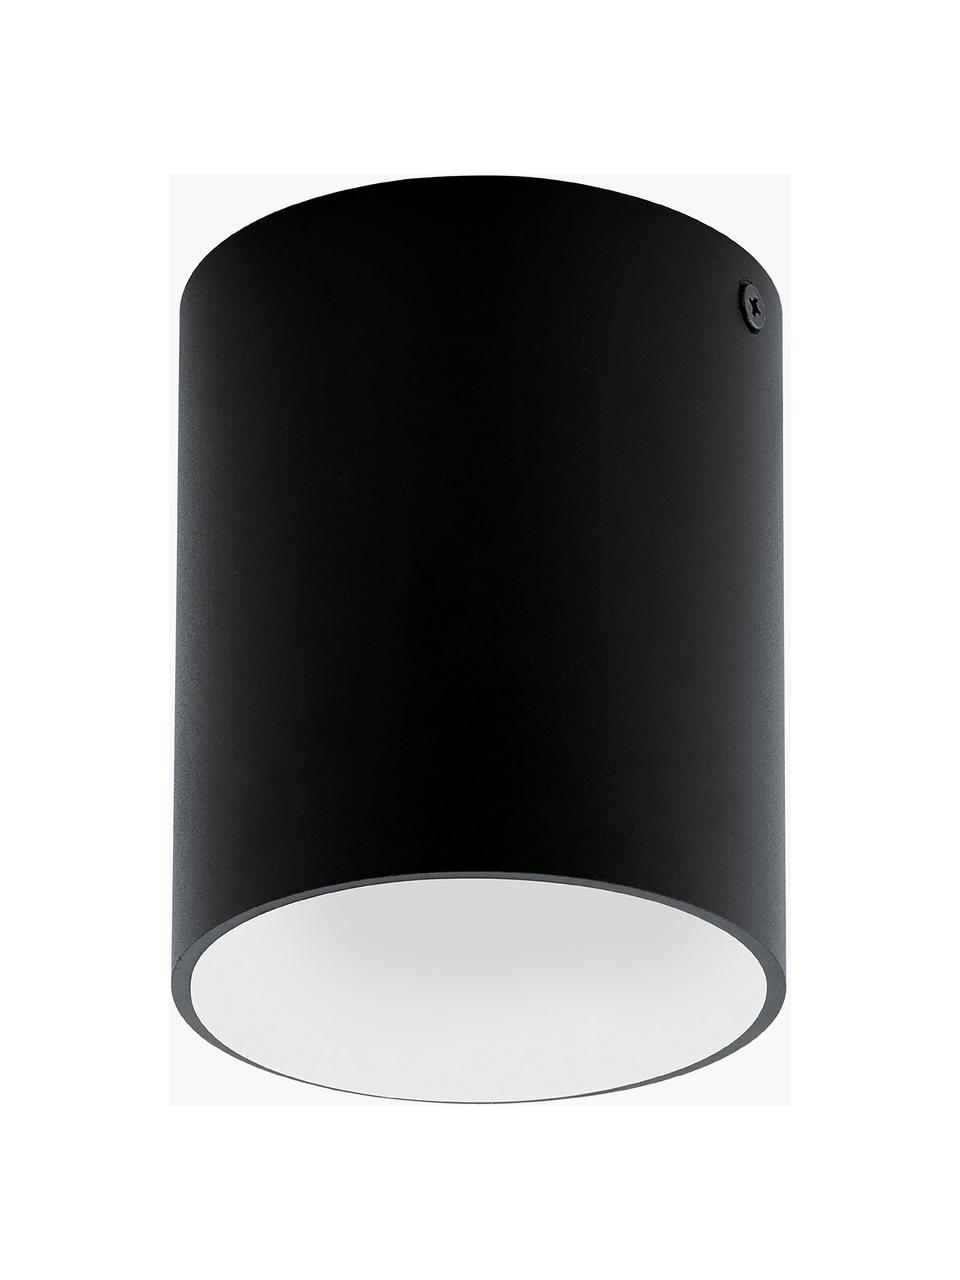 LED plafondspot Marty, Lampenkap: gepoedercoat metaal, Zwart, wit, Ø 10 x H 12 cm